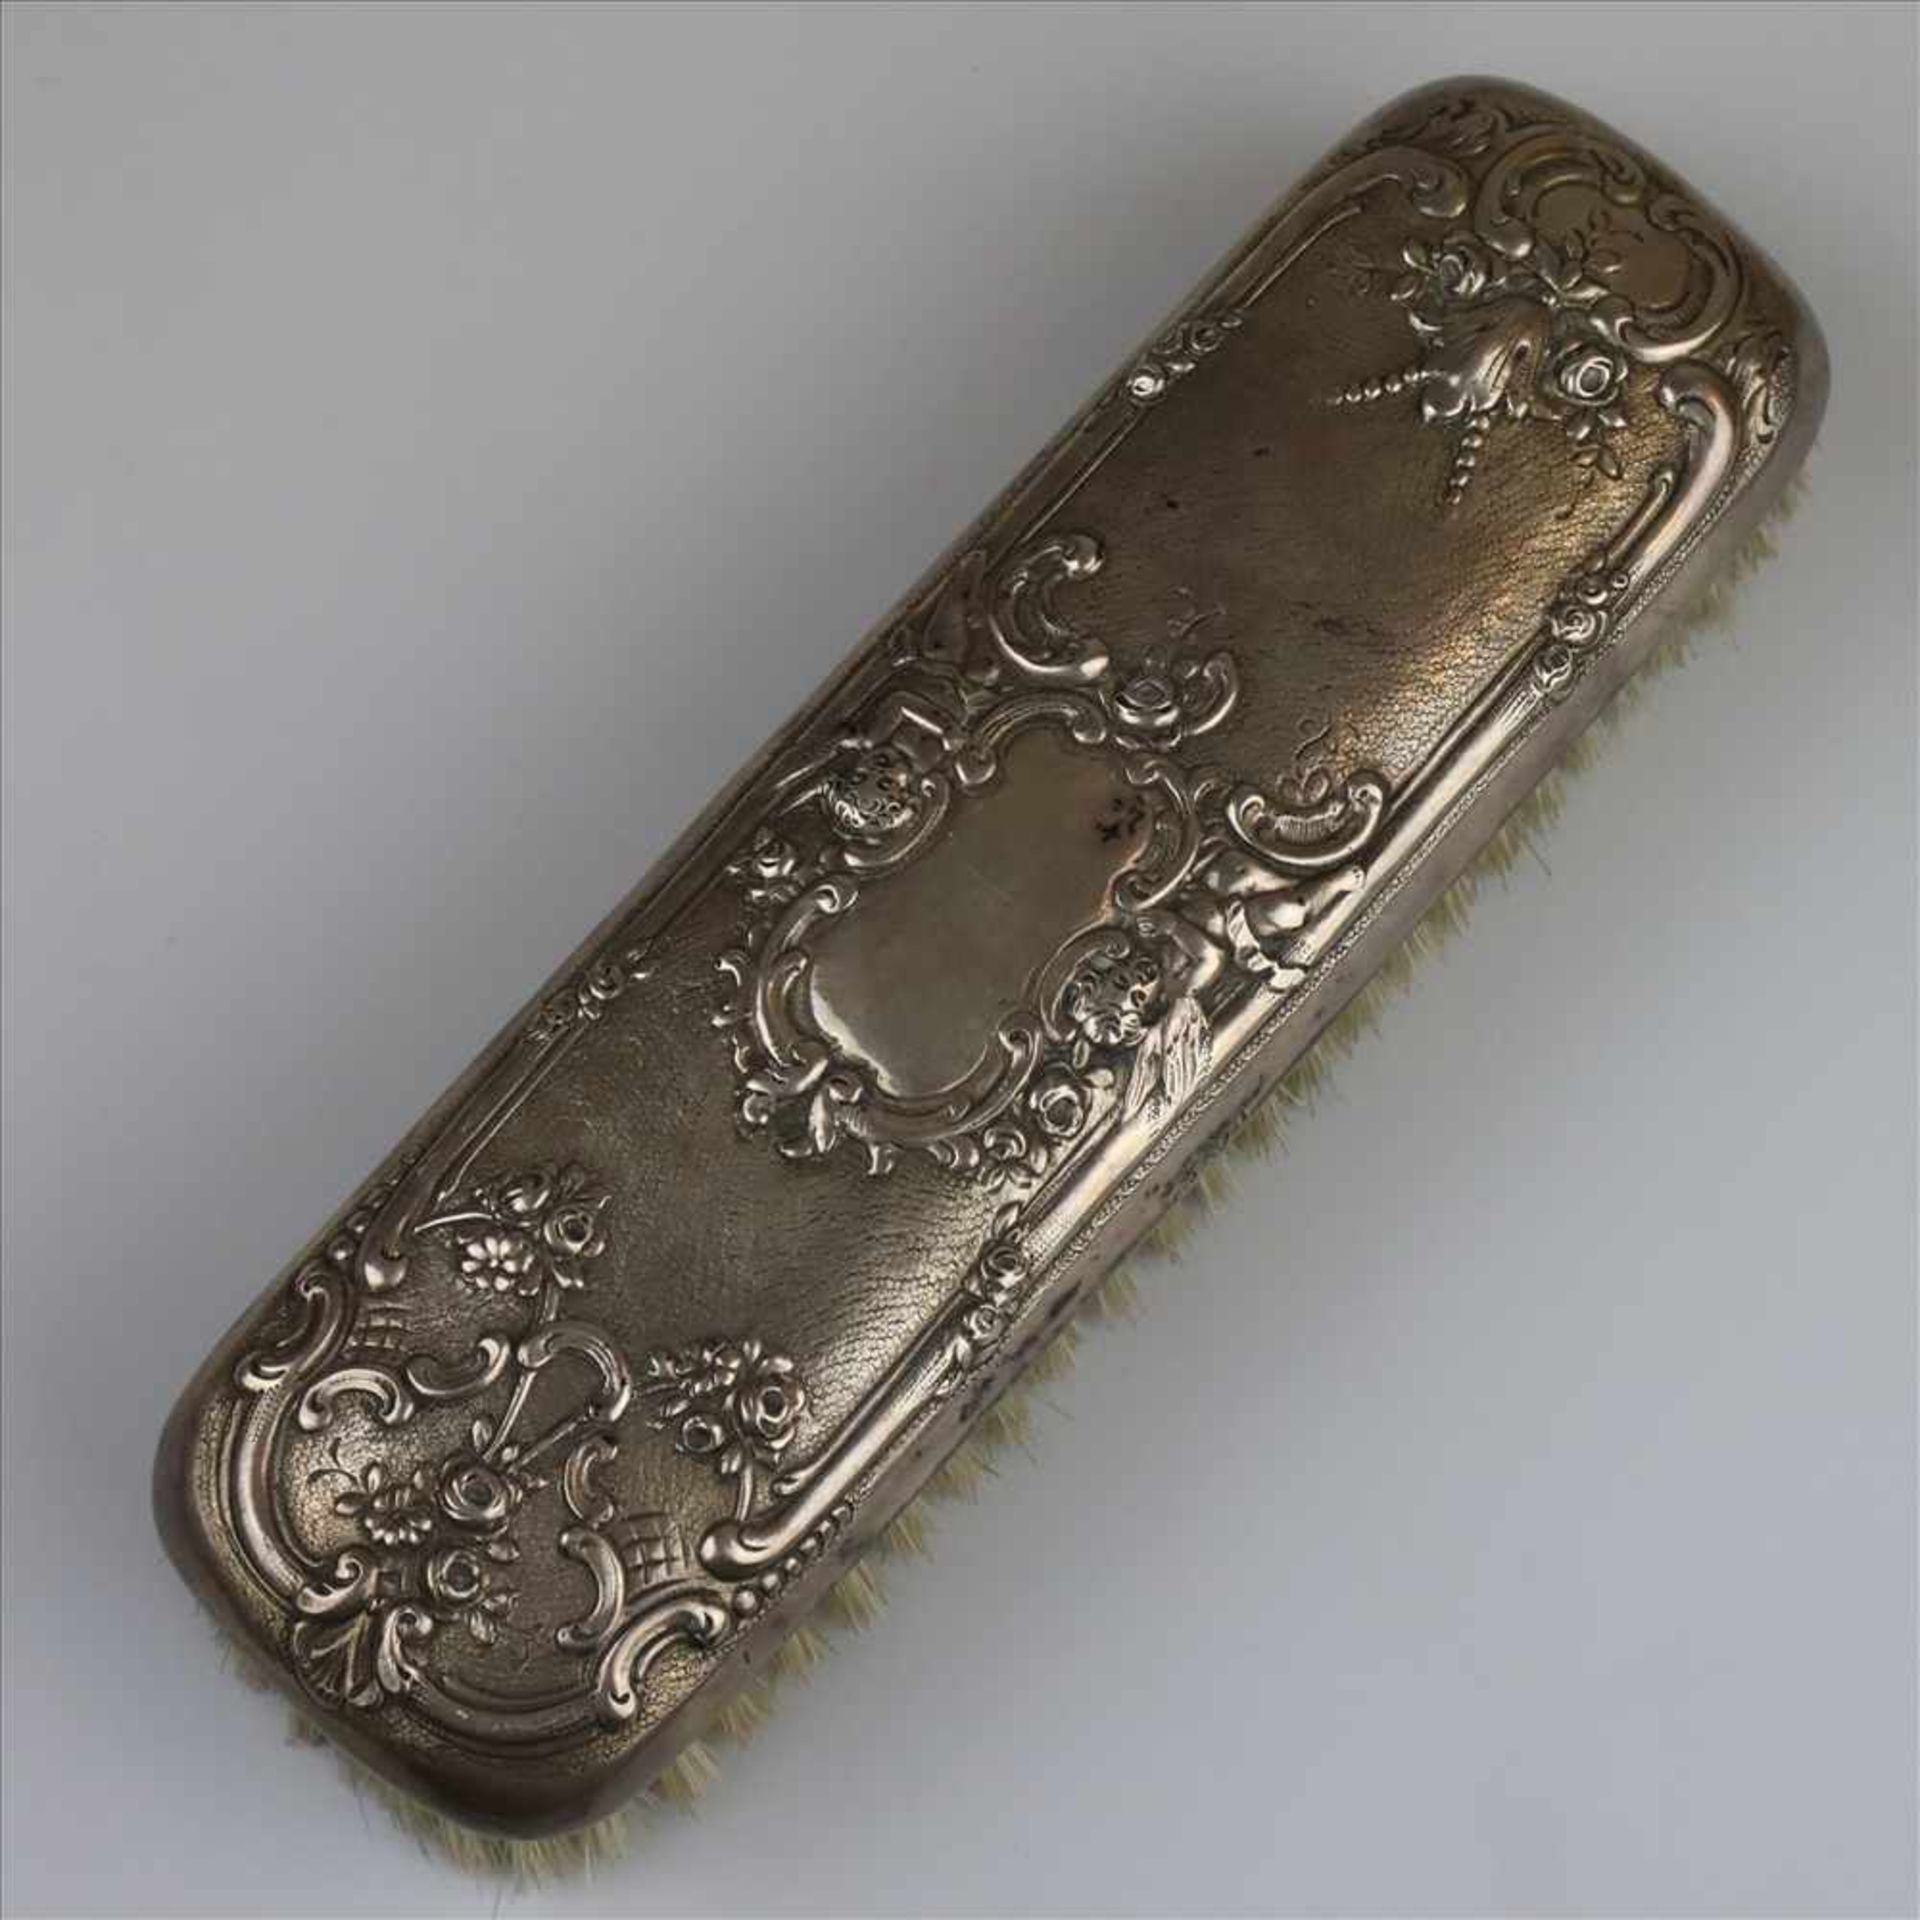 Bürste- Silber gestempelt "800", weitere Punzierungen, Reliefdekor: von zwei Putten flankierte leere